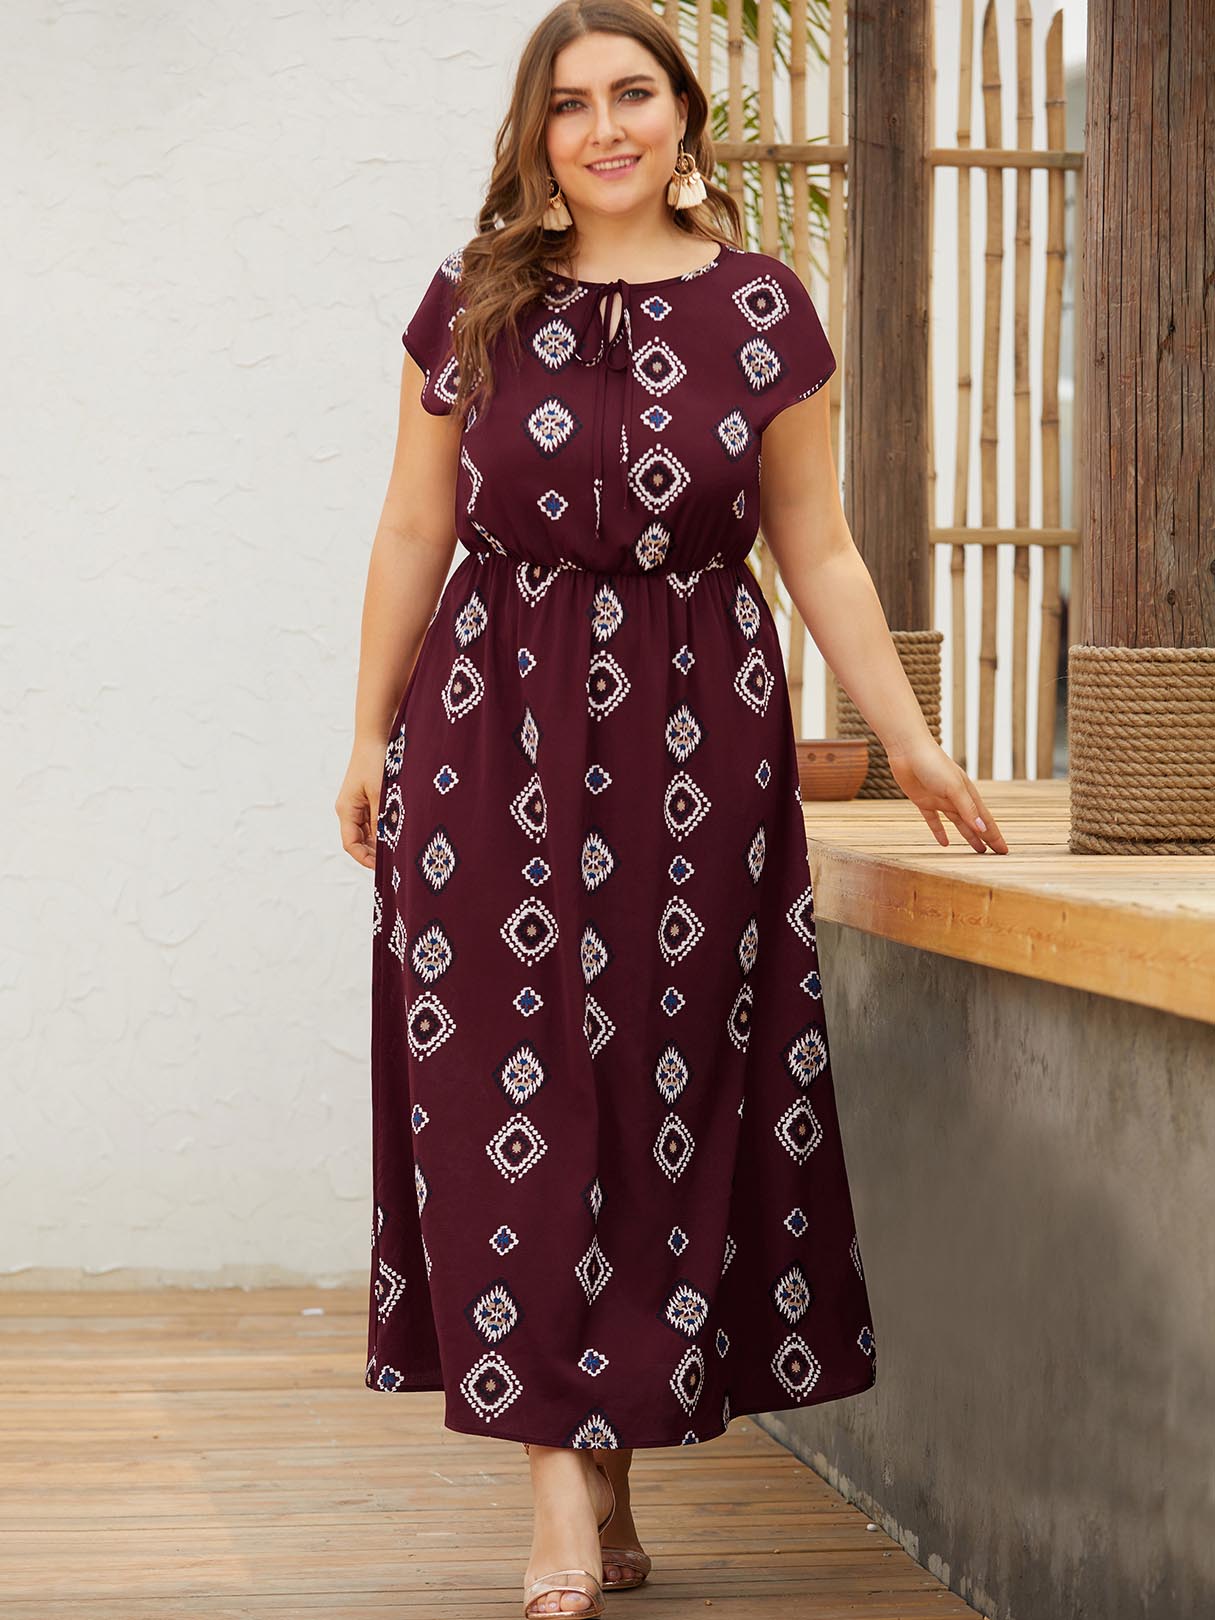 Wholesale Round Neck Geometrical Short Sleeve Burgundy Plus Size Dress